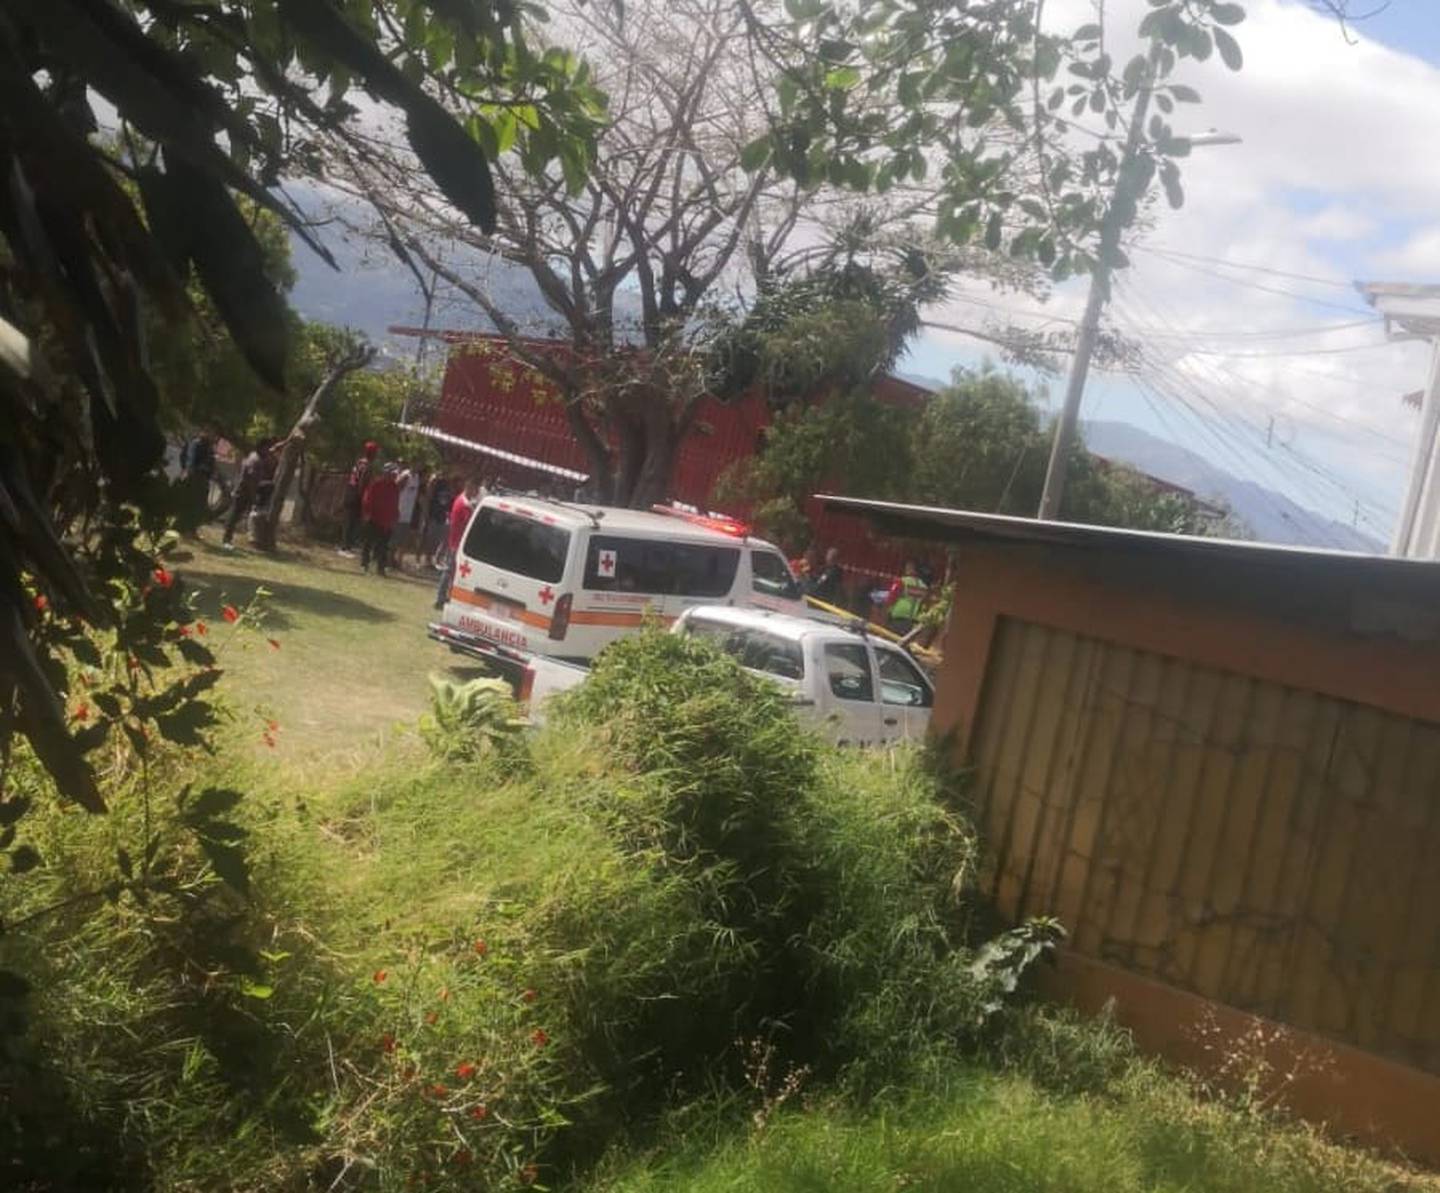 La Cruz Roja y la Fuerza Pública coincidieron en la escena, cerca de una parada de buses en Sauces, donde quedó el fallecido. Foto: Cortesía Heredia Hoy.